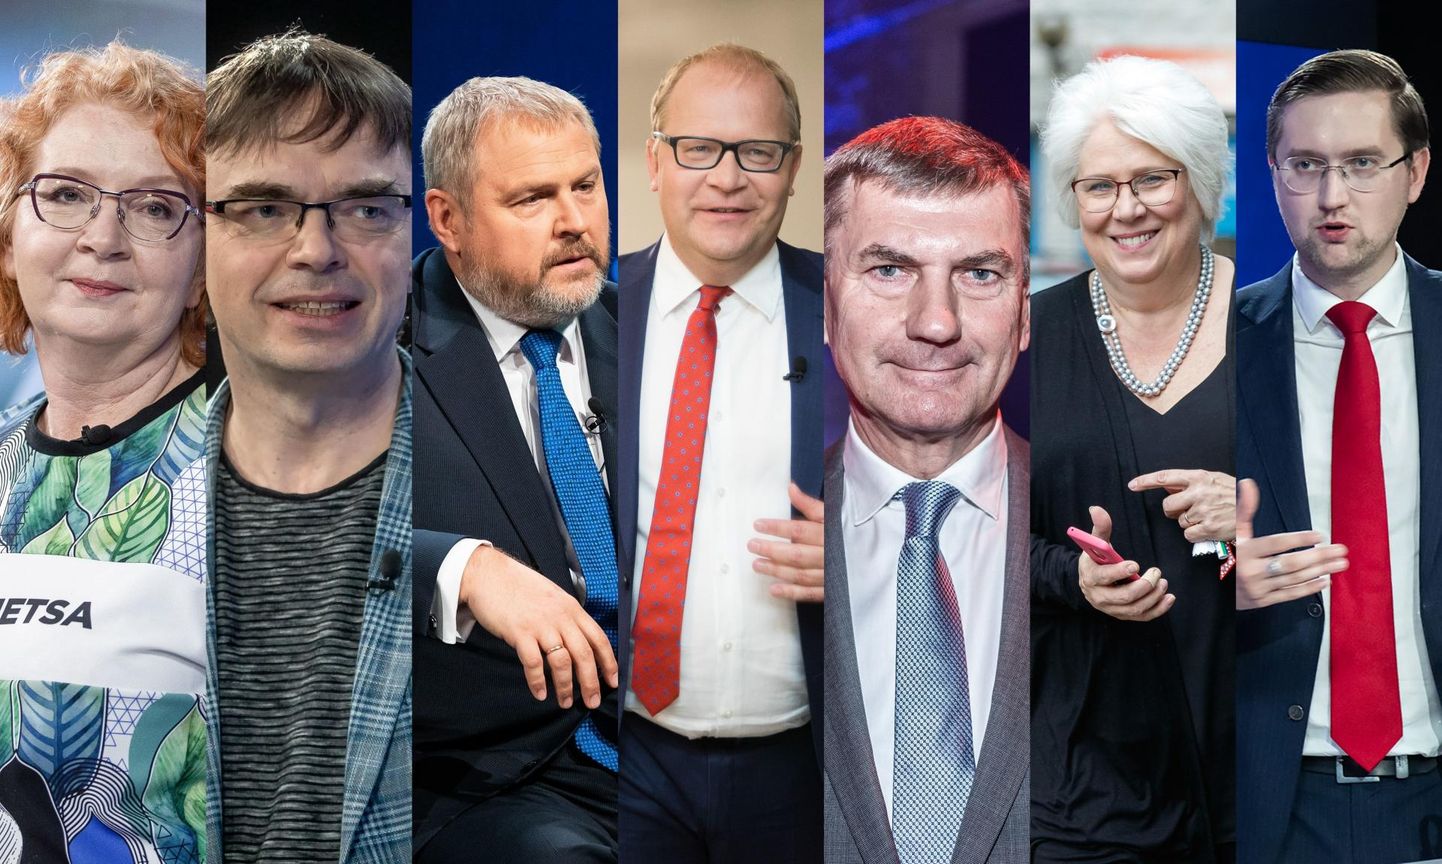 Eesti eurosaadikute seas kohtab volikogudesse kandideerimise võimaluse suhtes vastakaid seisukohti. Yana Toom ja Urmas Paet on arvamusel, et kahe esinduskogu tööd saab ühitada. Allar Jõks leiab, et MEPide dessant volikogudesse annab tunnistust erakondade lühikesest pingist.